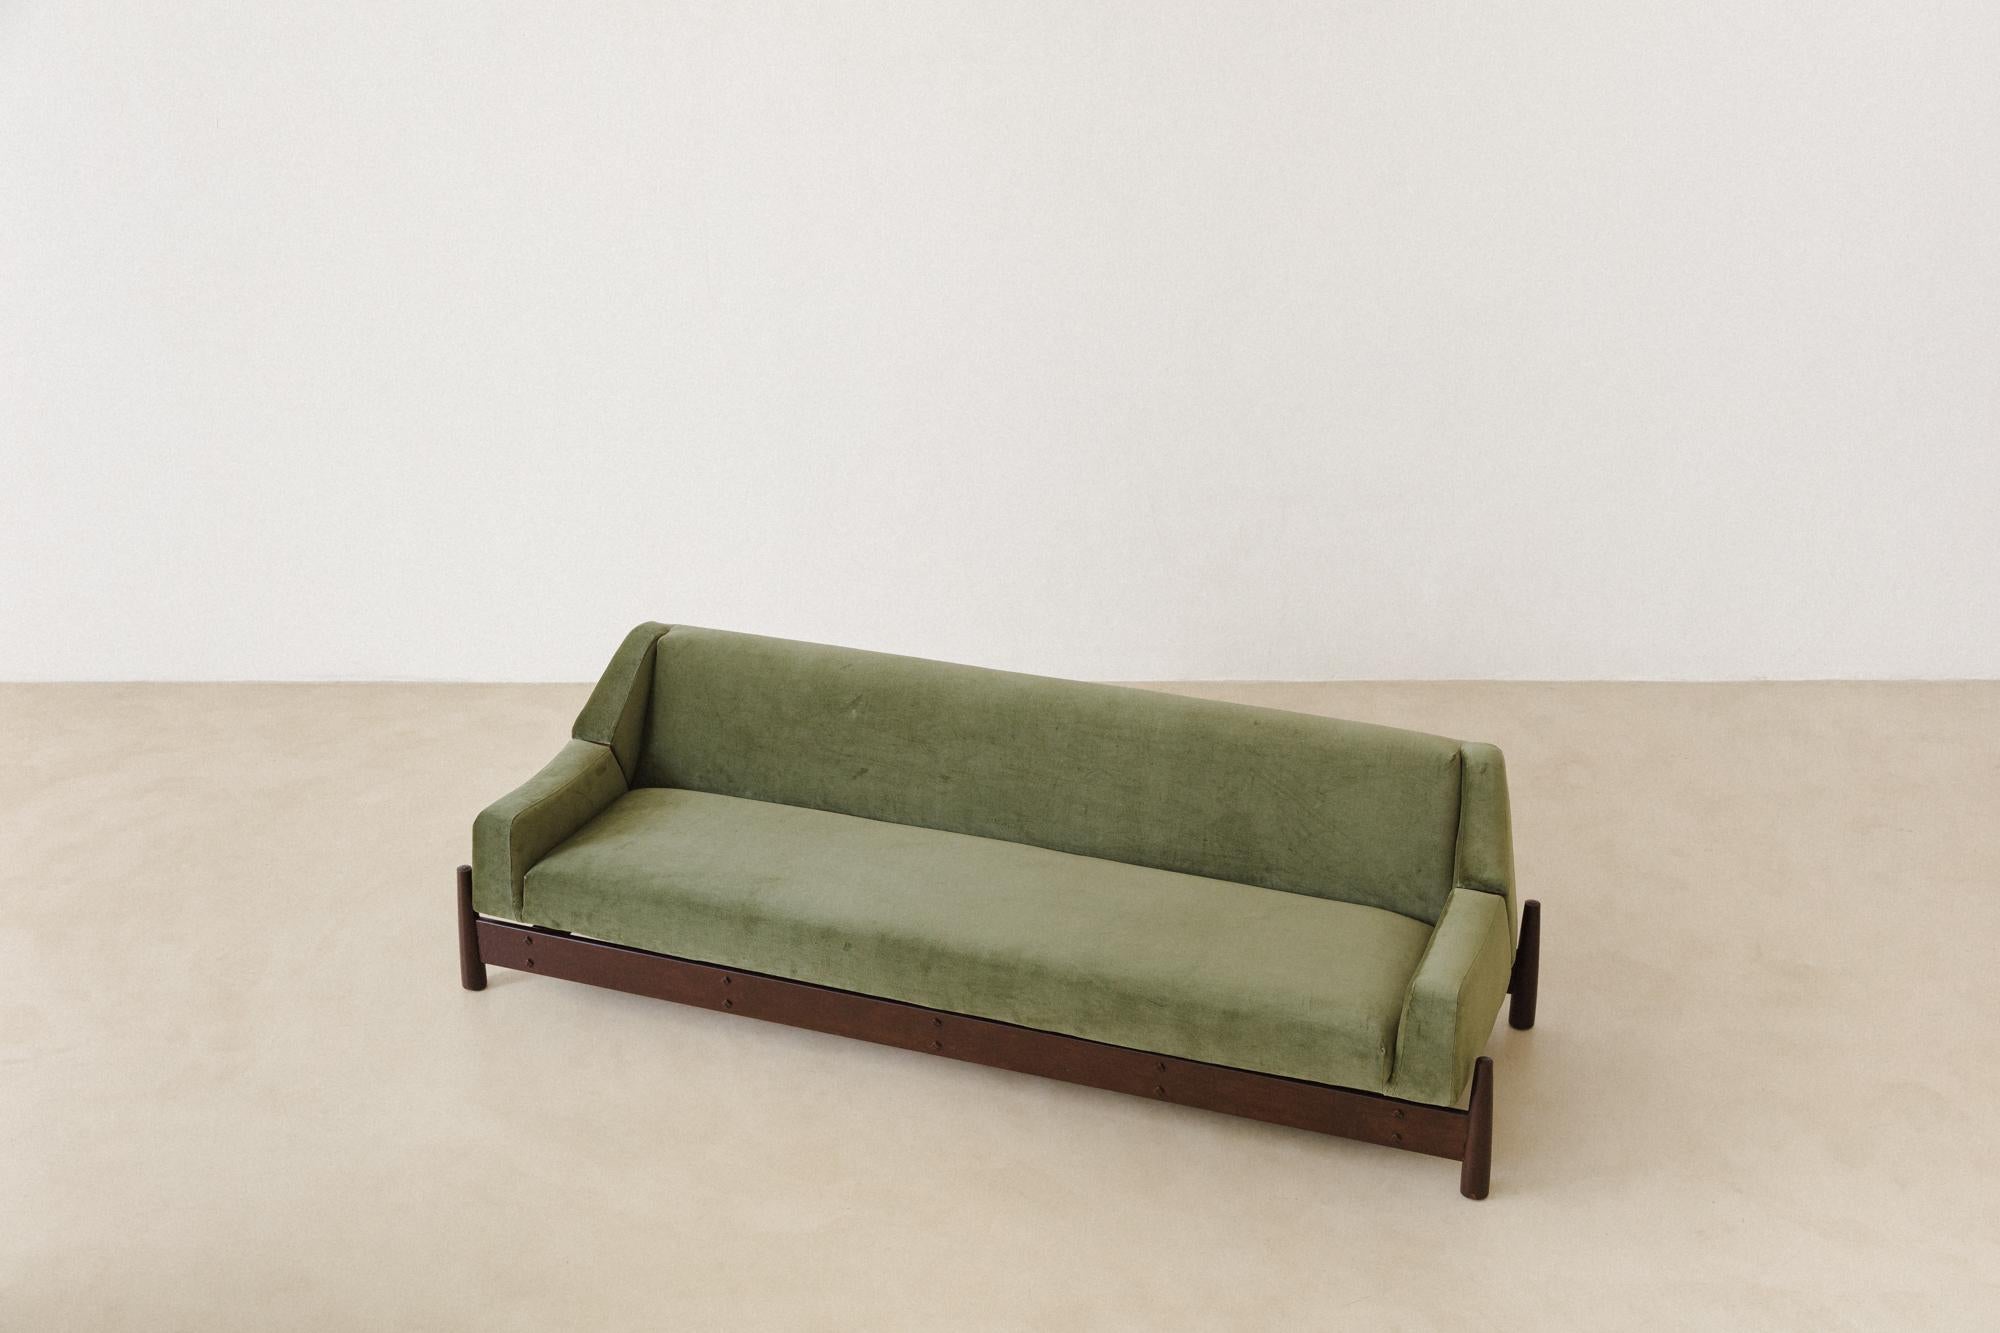 Ce canapé Imbuia retapissé dans un superbe velours a été fabriqué dans les années 1960 par la société brésilienne Móveis Cimo, pionnière de l'industrialisation du mobilier brésilien. 

Le canapé Cimo est très charmant, car il présente l'assise et